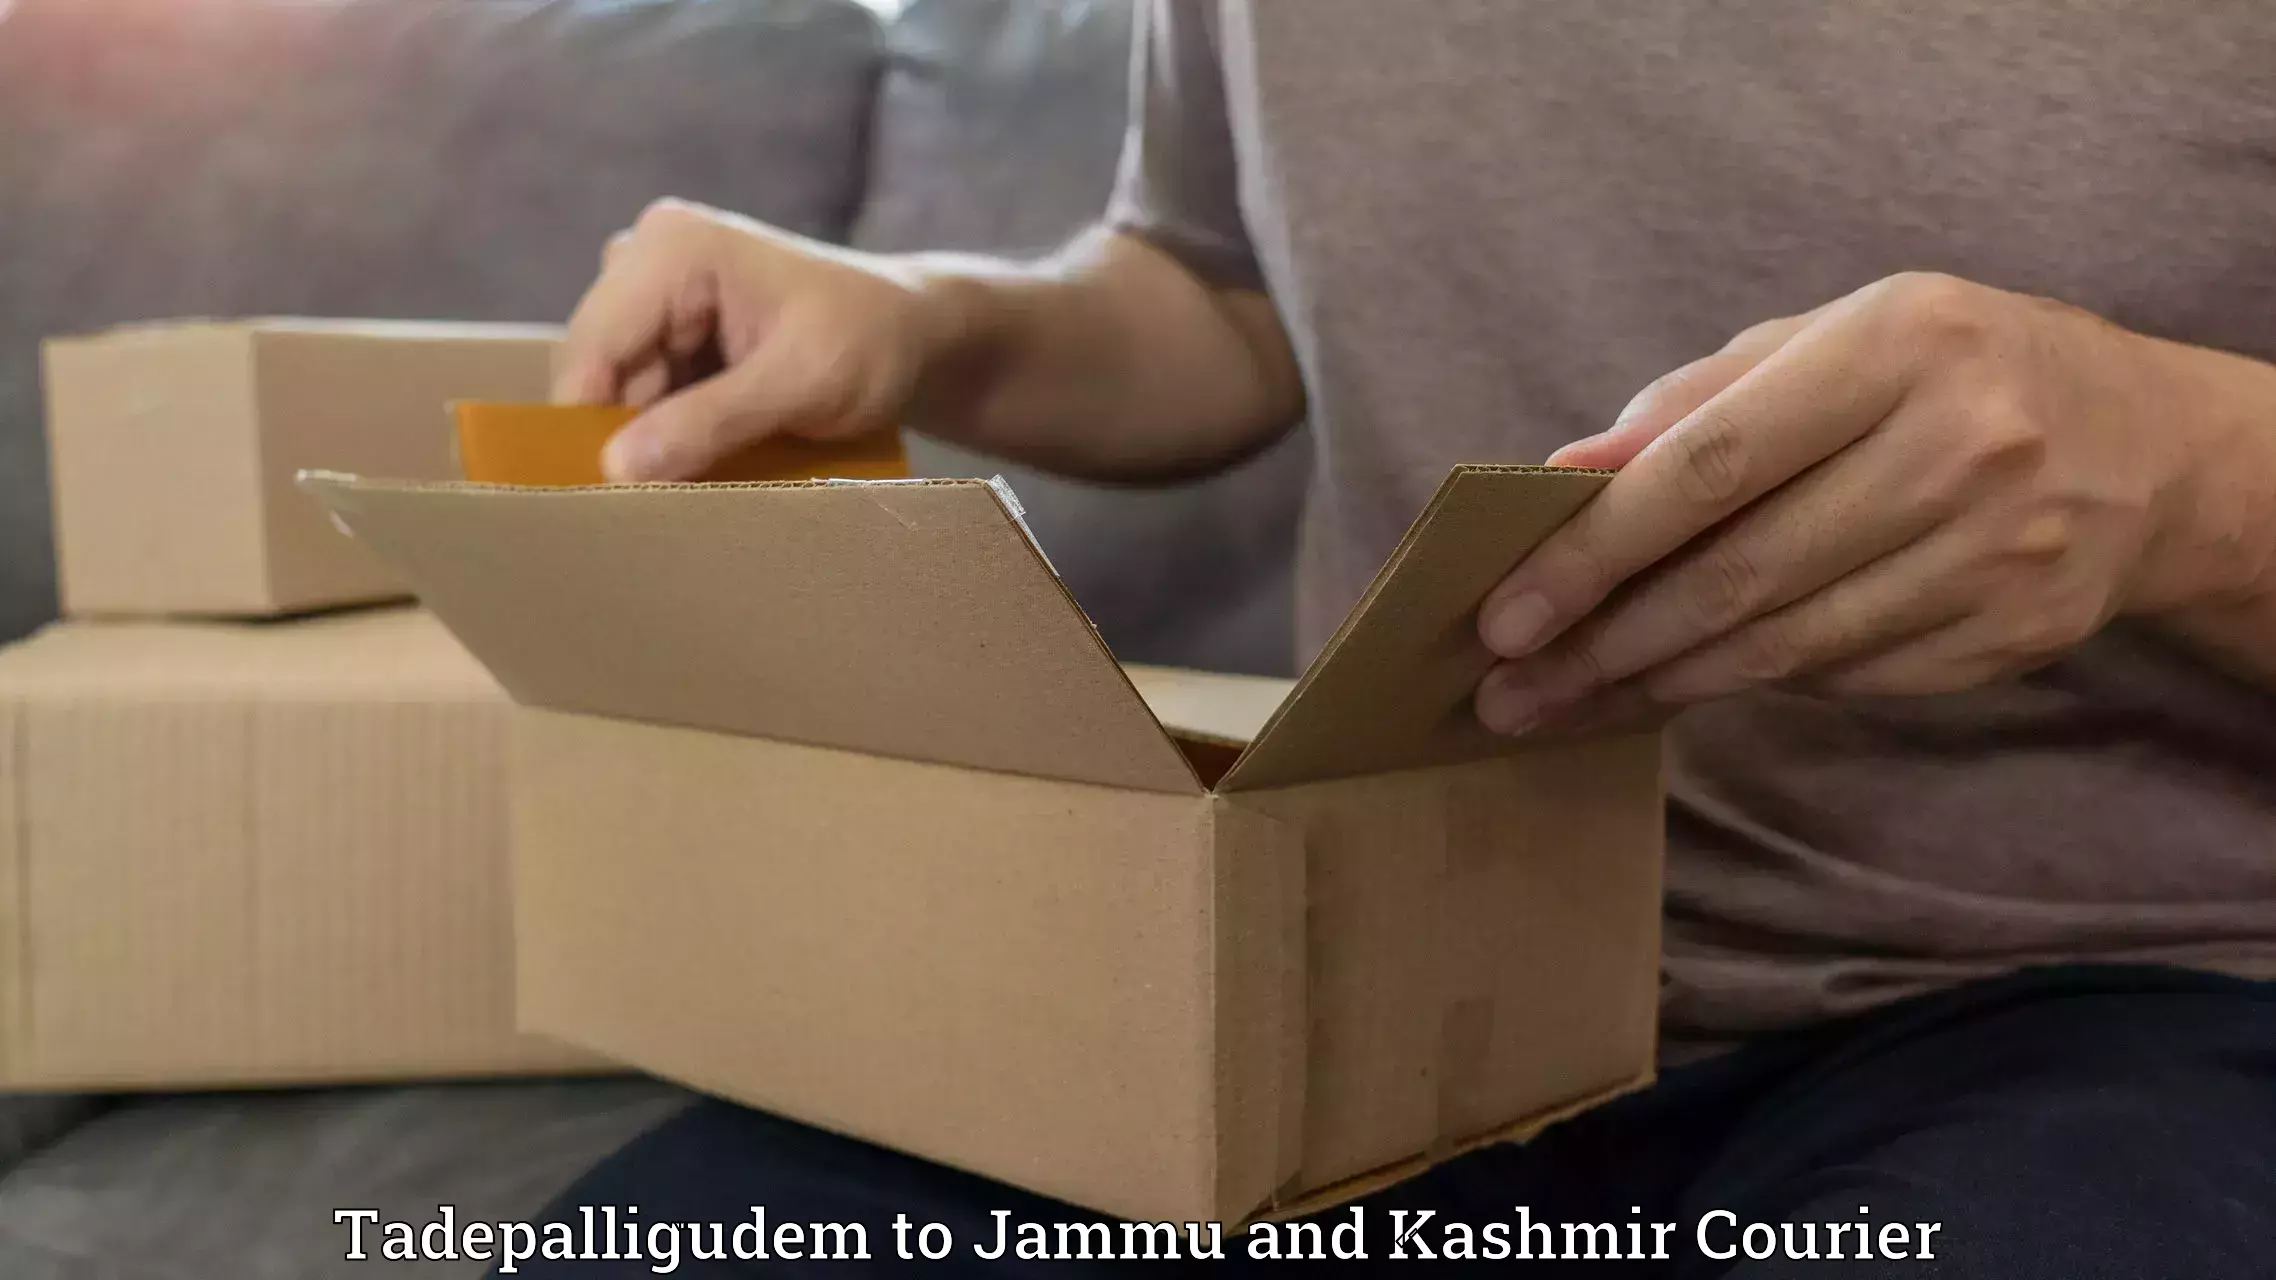 Courier service comparison Tadepalligudem to Srinagar Kashmir